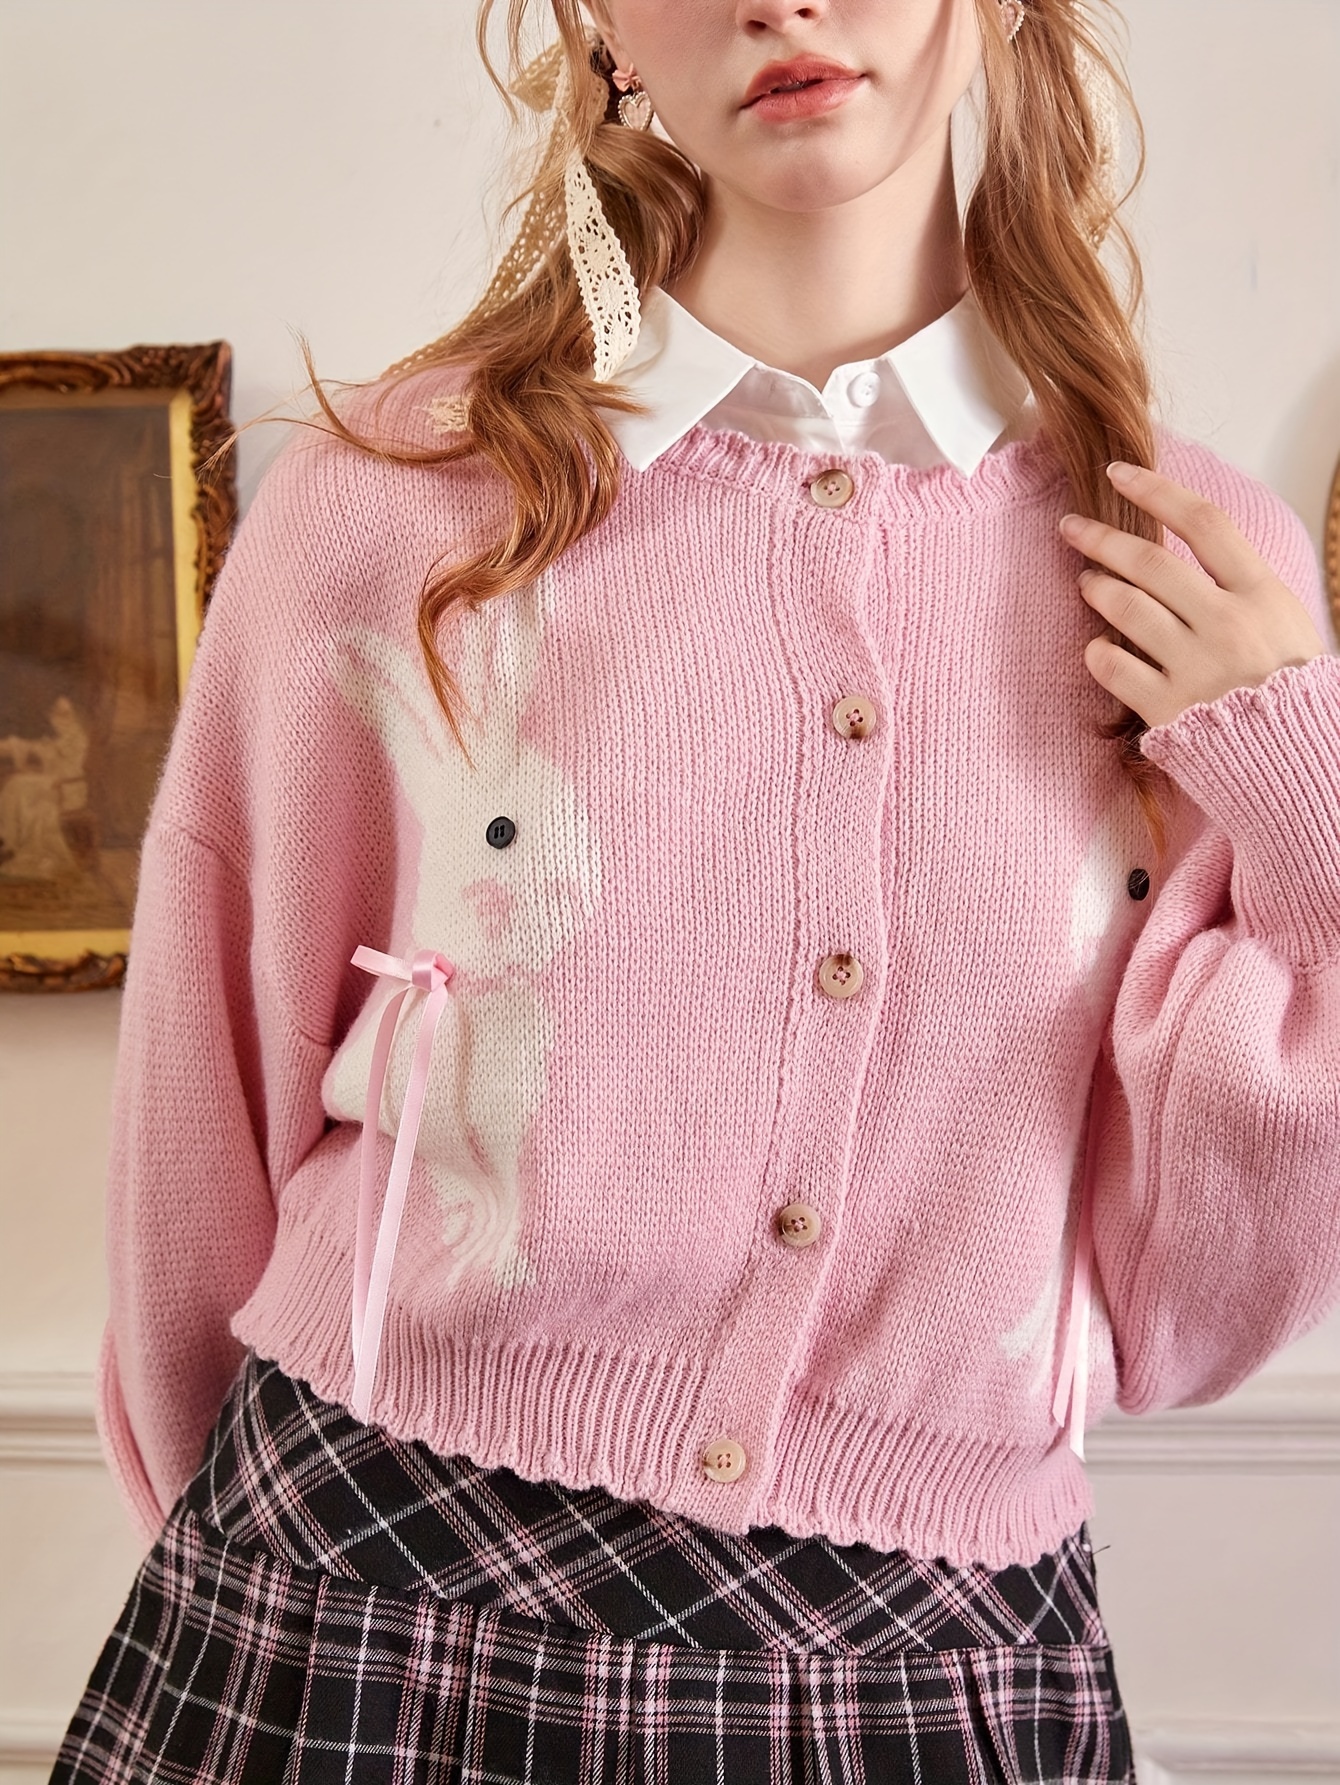 Women's Long Sleeve Cute Cardigan Sweater Y2k Top Cropped Knit